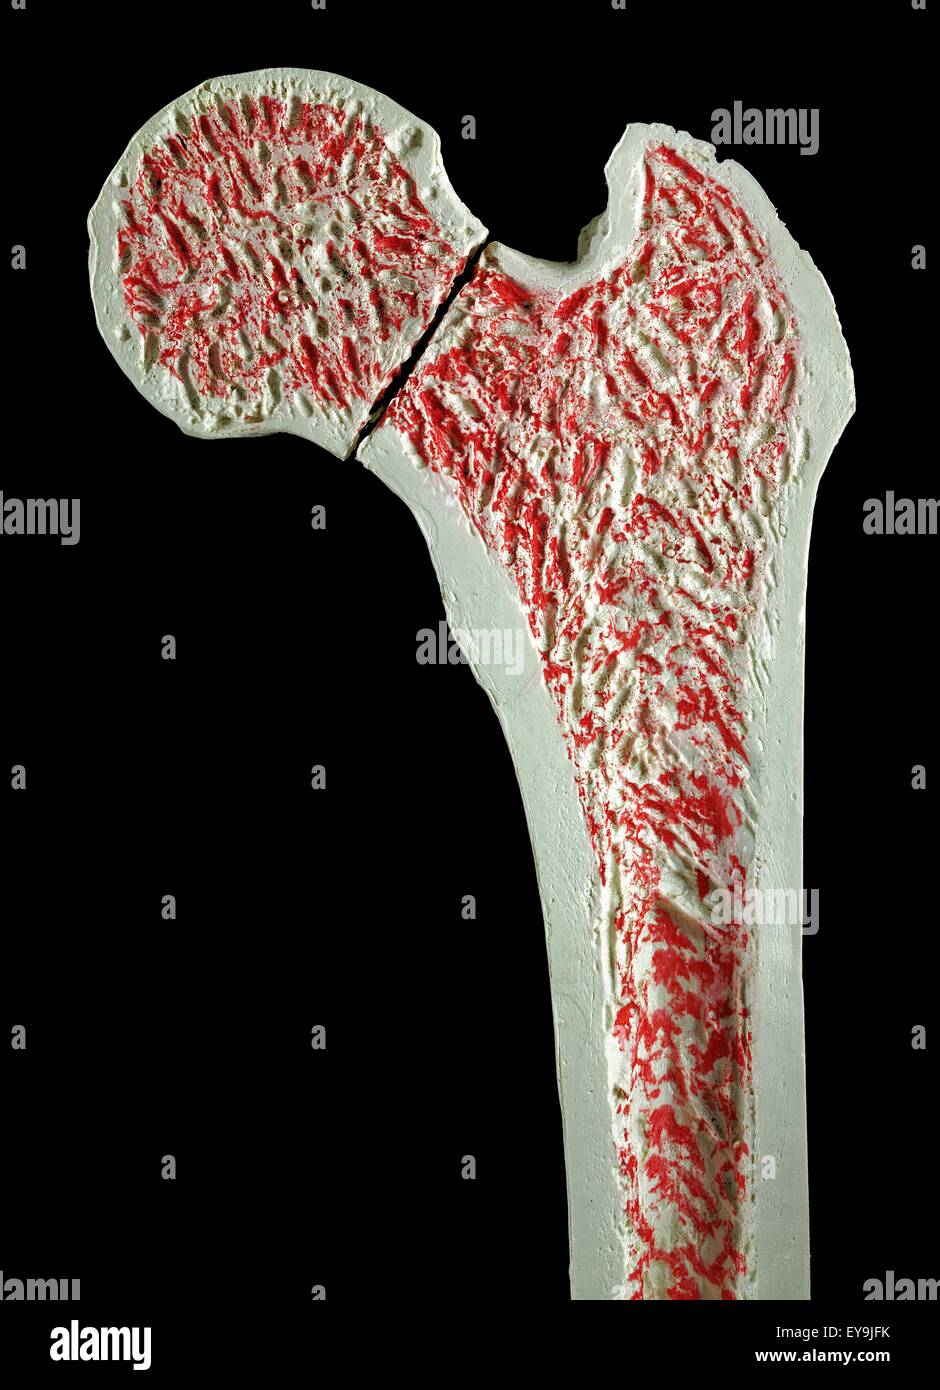 Sezione trasversale attraverso un modello di una frattura del collo del femore (femore). Foto Stock